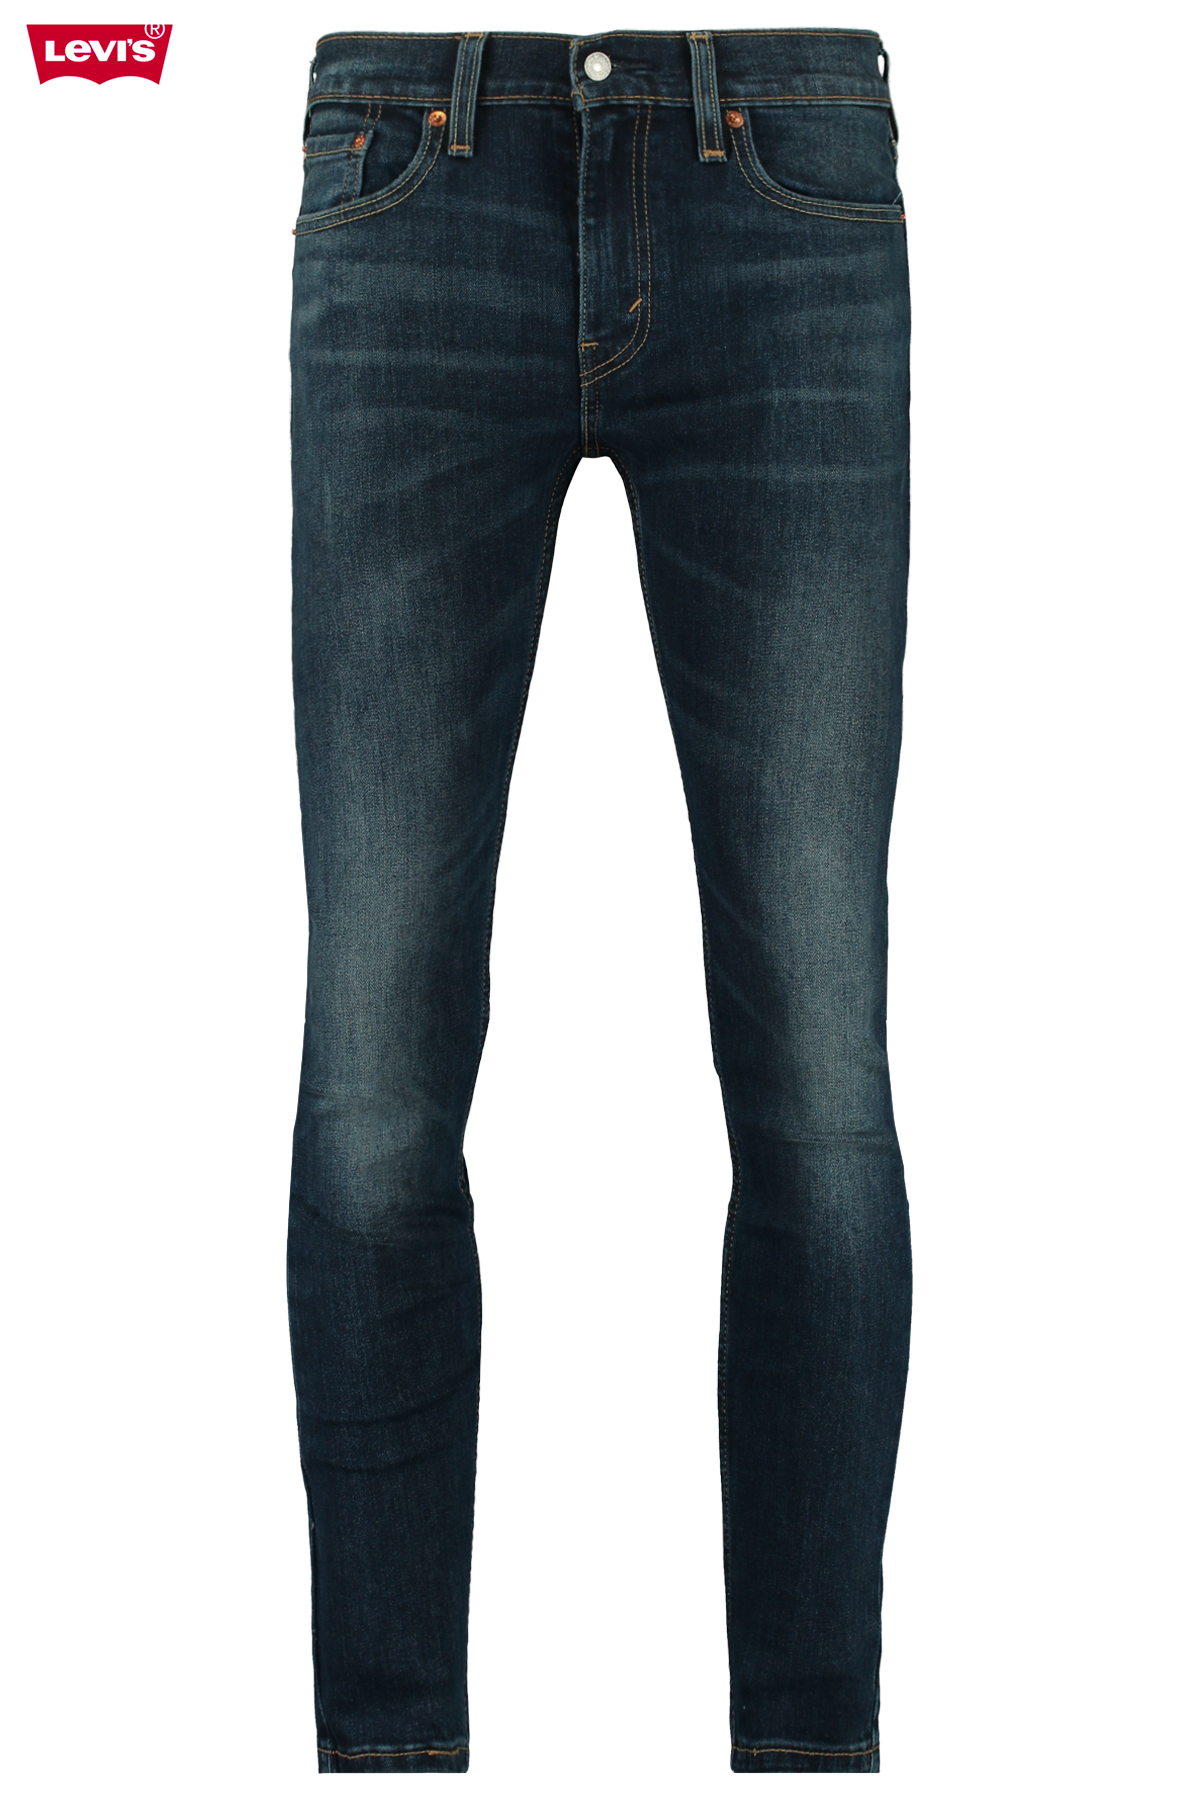 levis 519 mens jeans